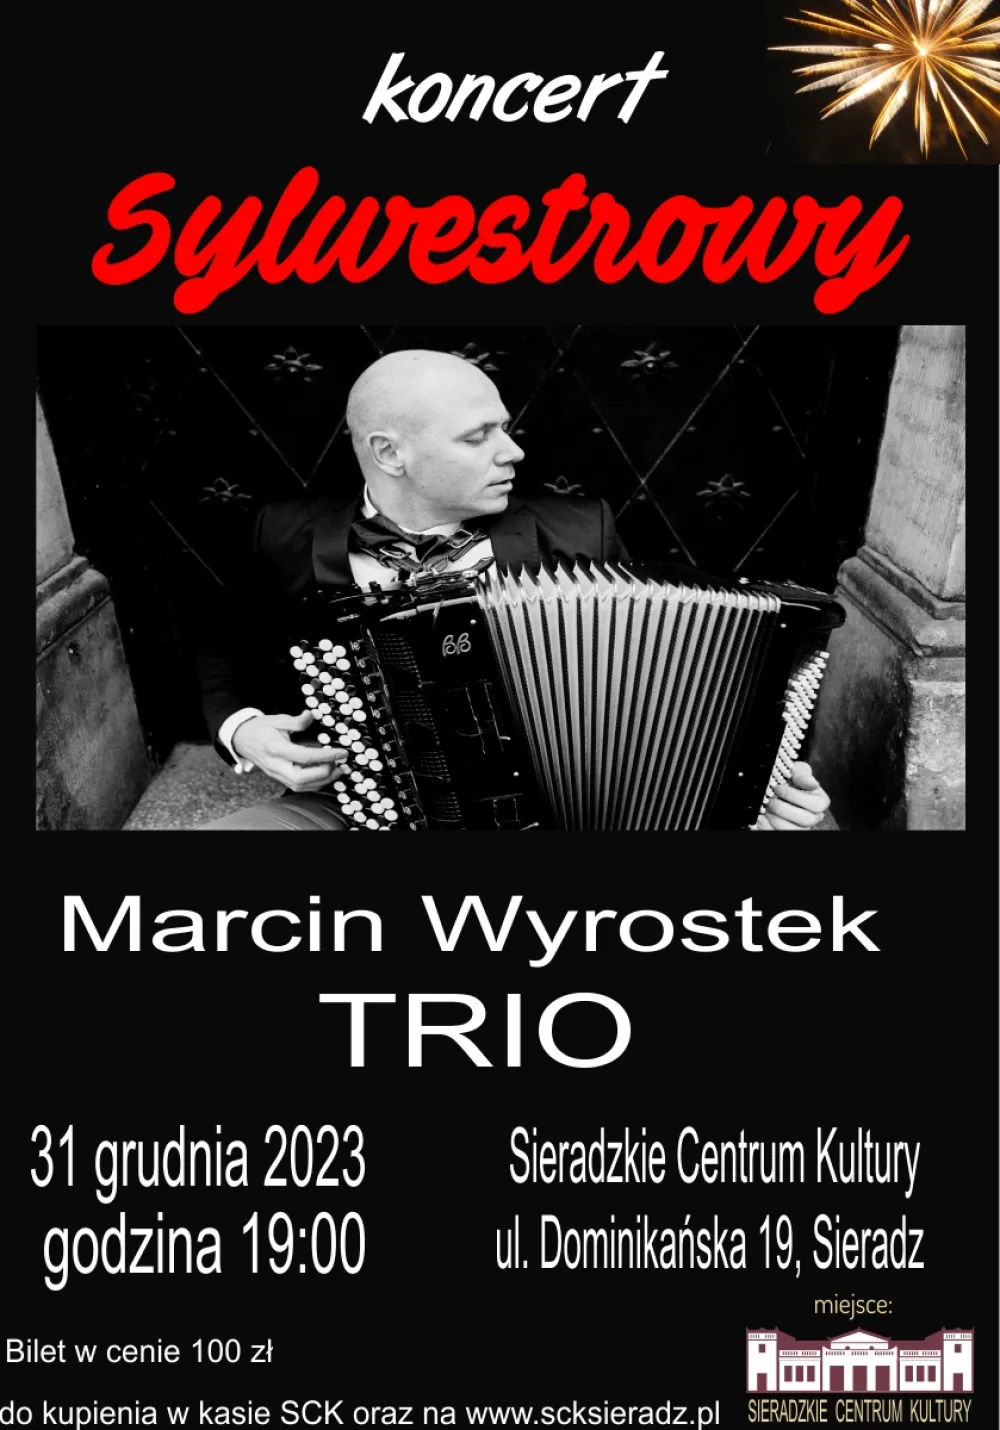 Koncert Sylwestrowy Marcin Wyrostek TRIO